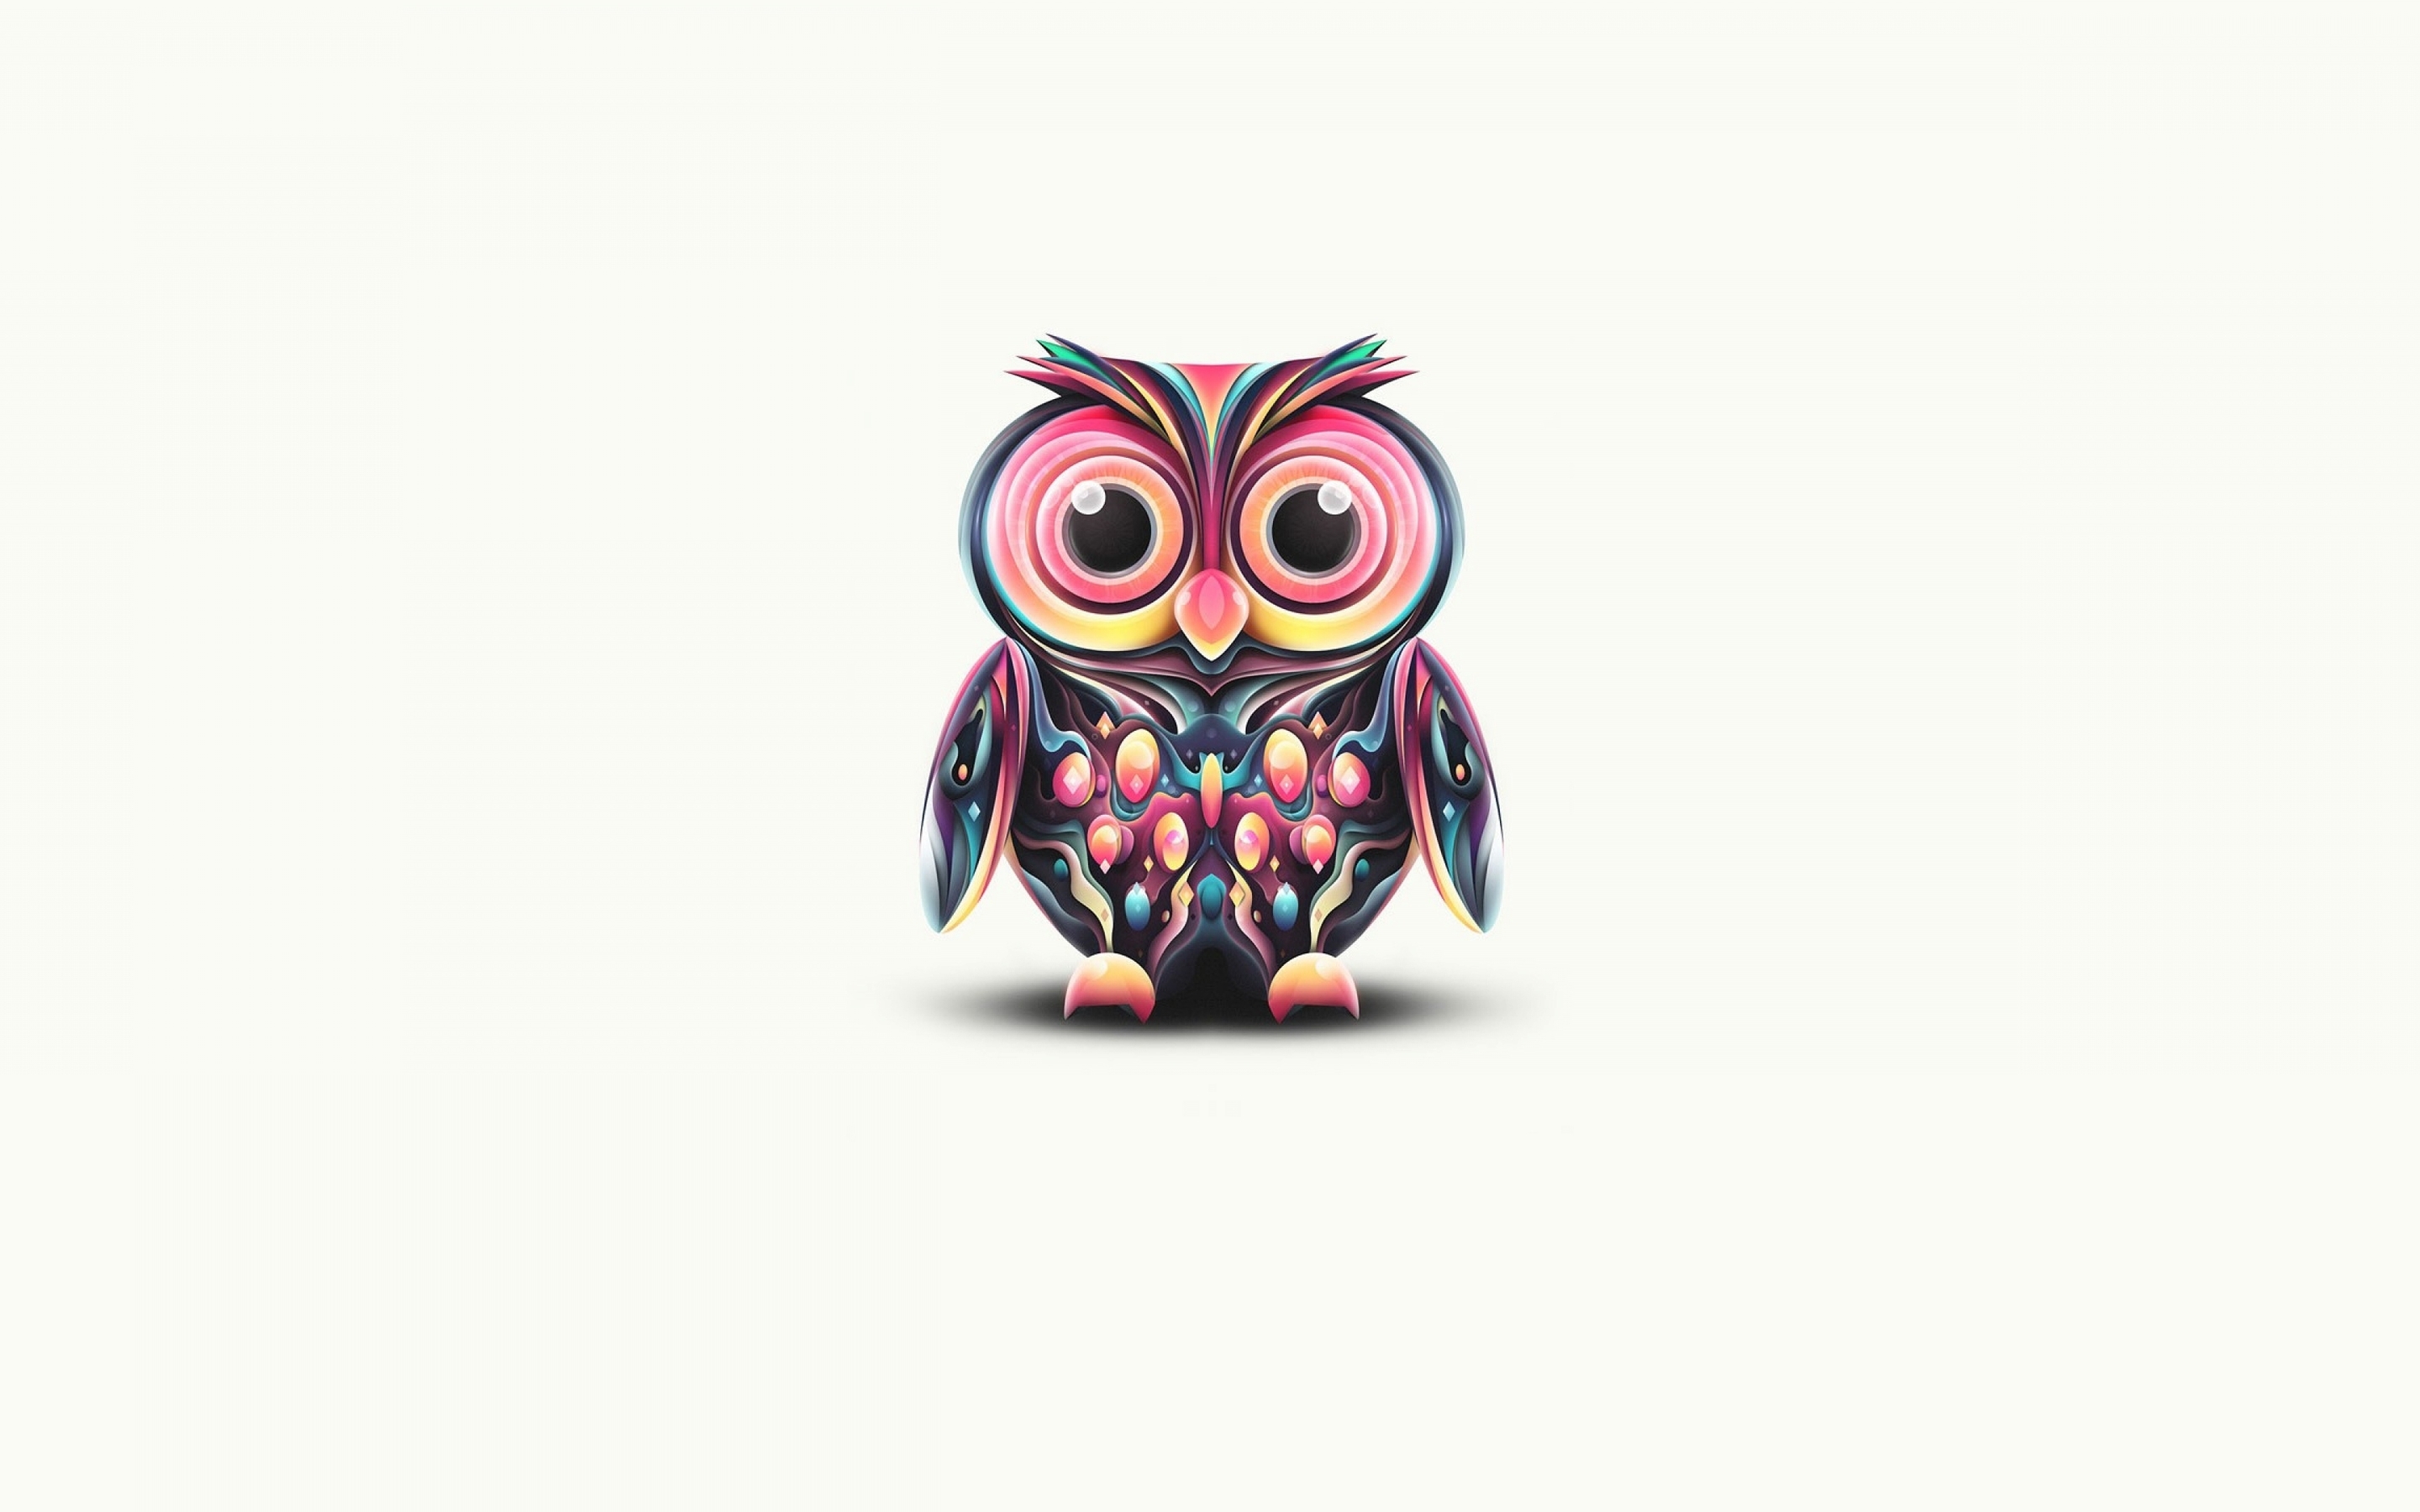 Image: Owl, eyes, shadow, white background, minimalism